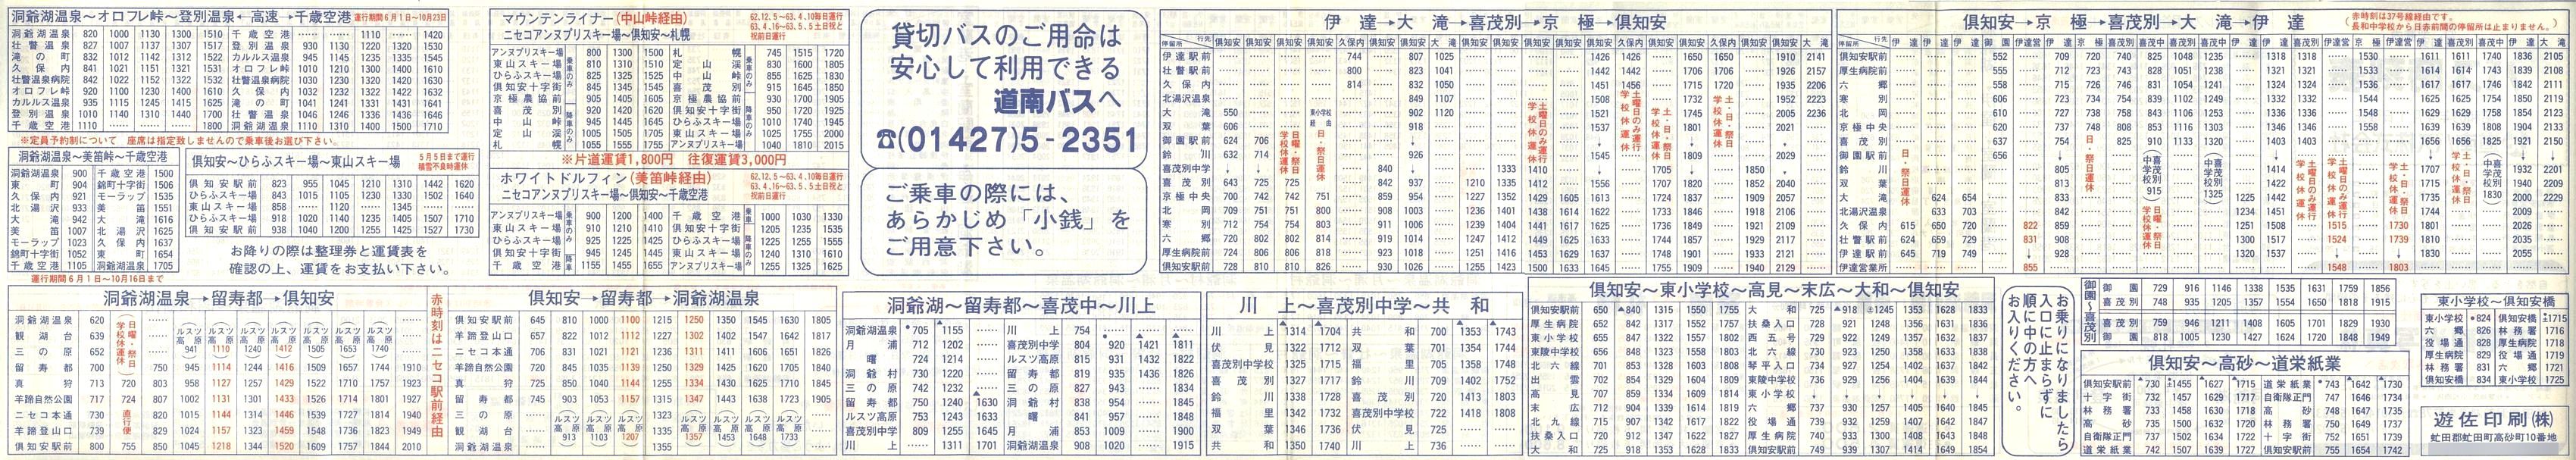 1988-04-01改正_道南バス_洞爺・倶知安管内時刻表裏面